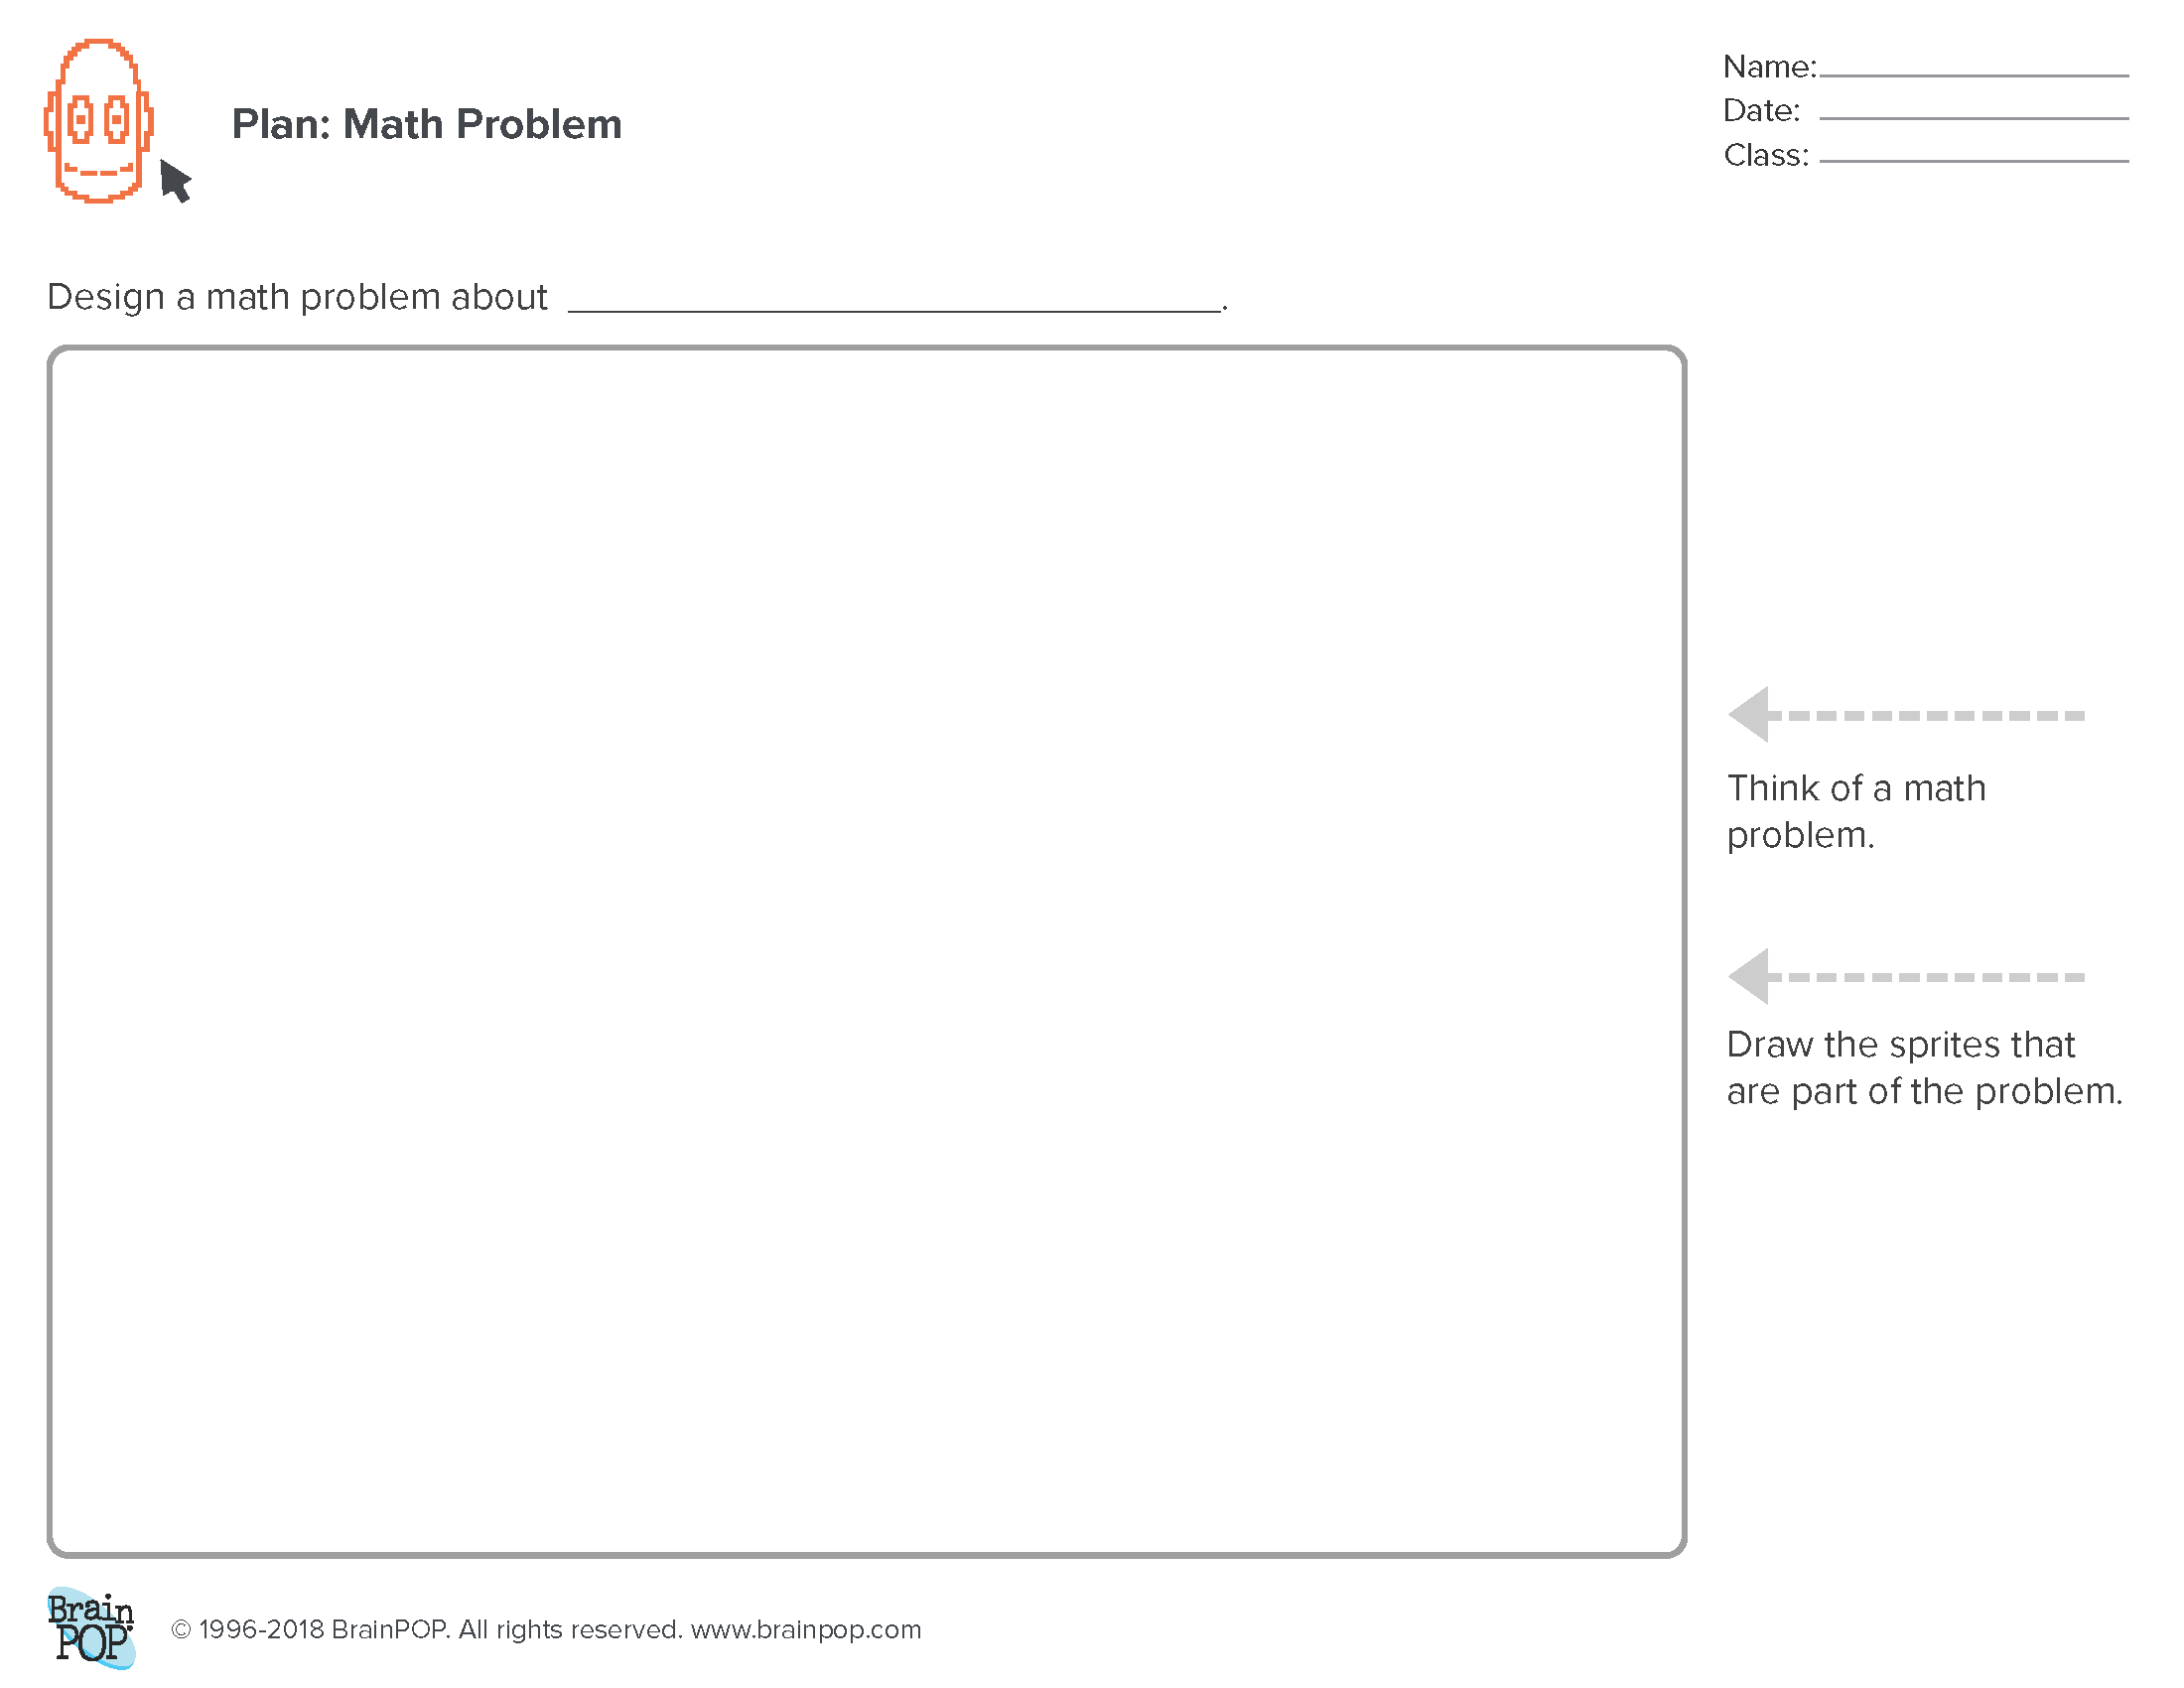 Planning Sheet: Math Problem